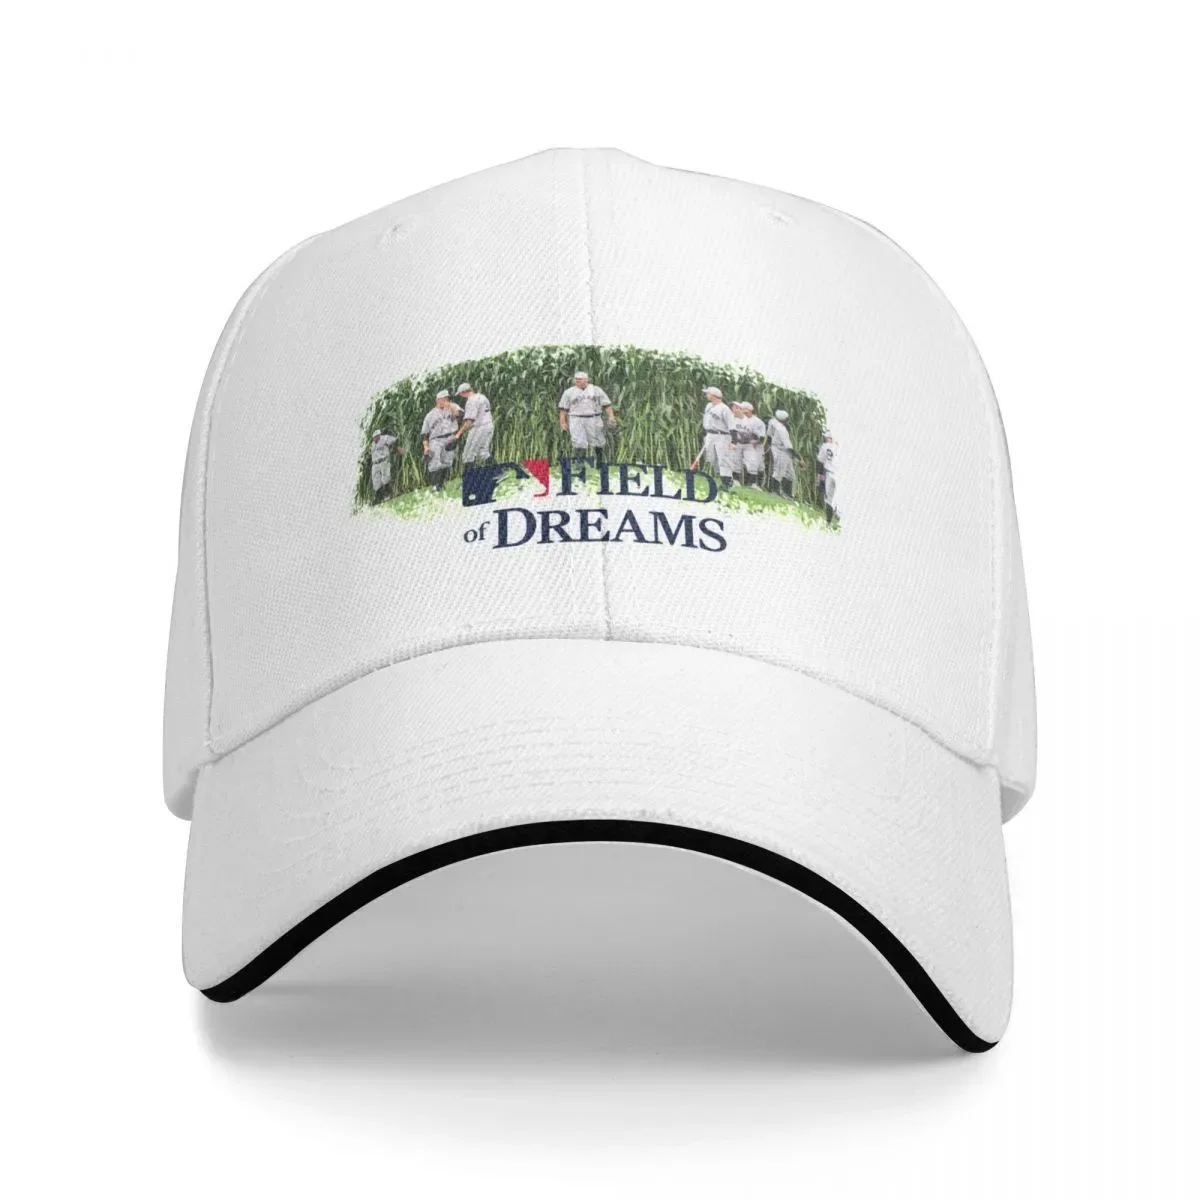 

New Field of Dreams Cap Baseball Cap baseball cap man Sunscreen Women's cap Men's